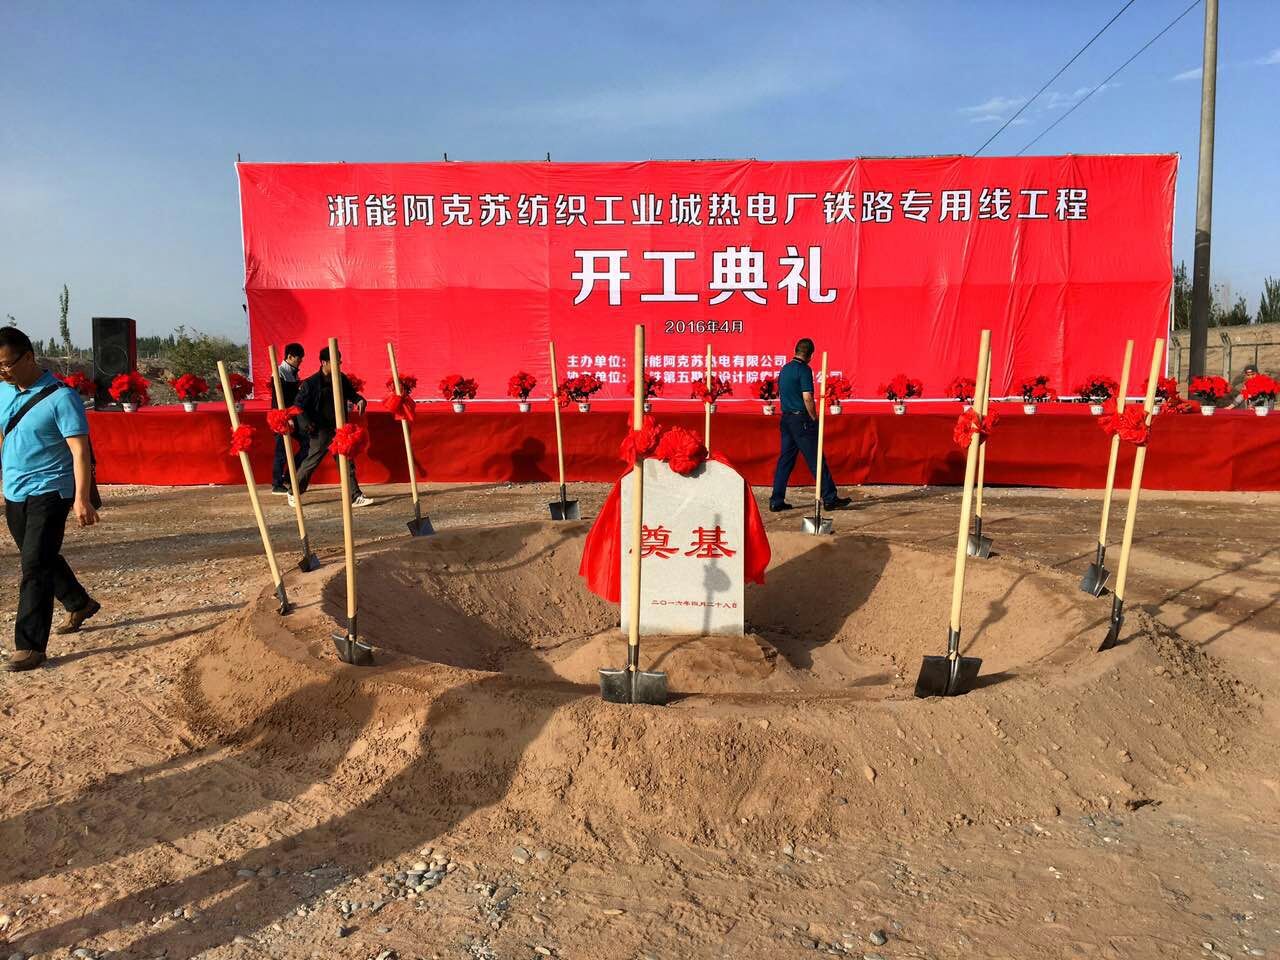 浙能新疆阿克蘇熱電廠鐵路專用線開工典禮